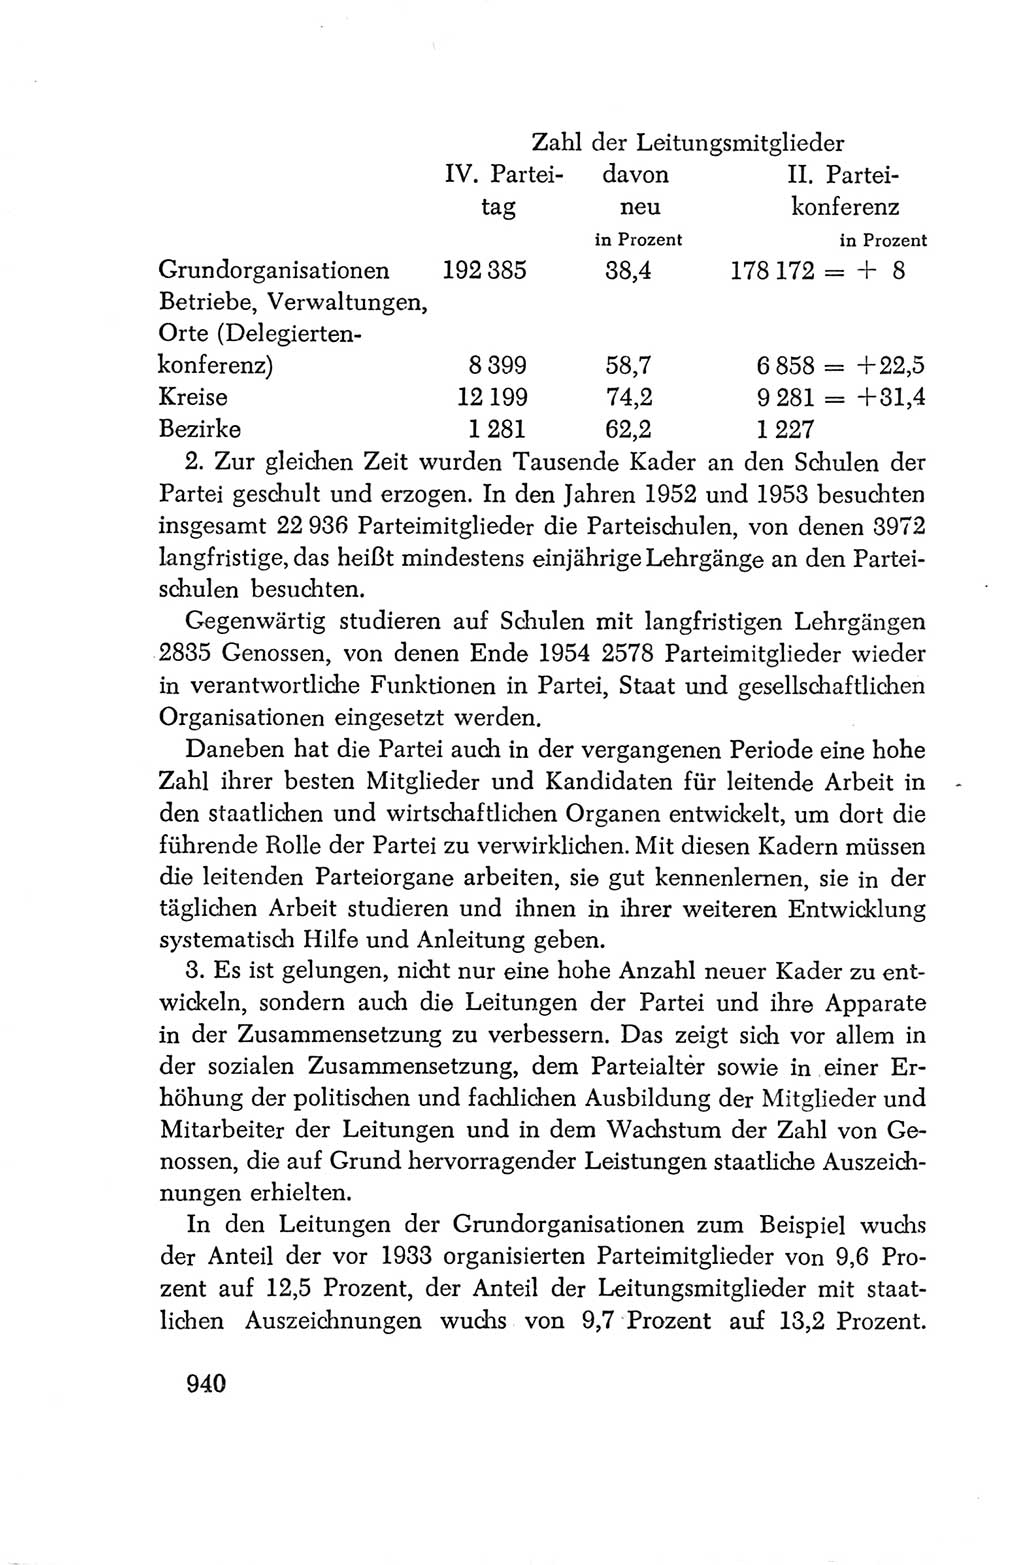 Protokoll der Verhandlungen des Ⅳ. Parteitages der Sozialistischen Einheitspartei Deutschlands (SED) [Deutsche Demokratische Republik (DDR)] 1954, Seite 940